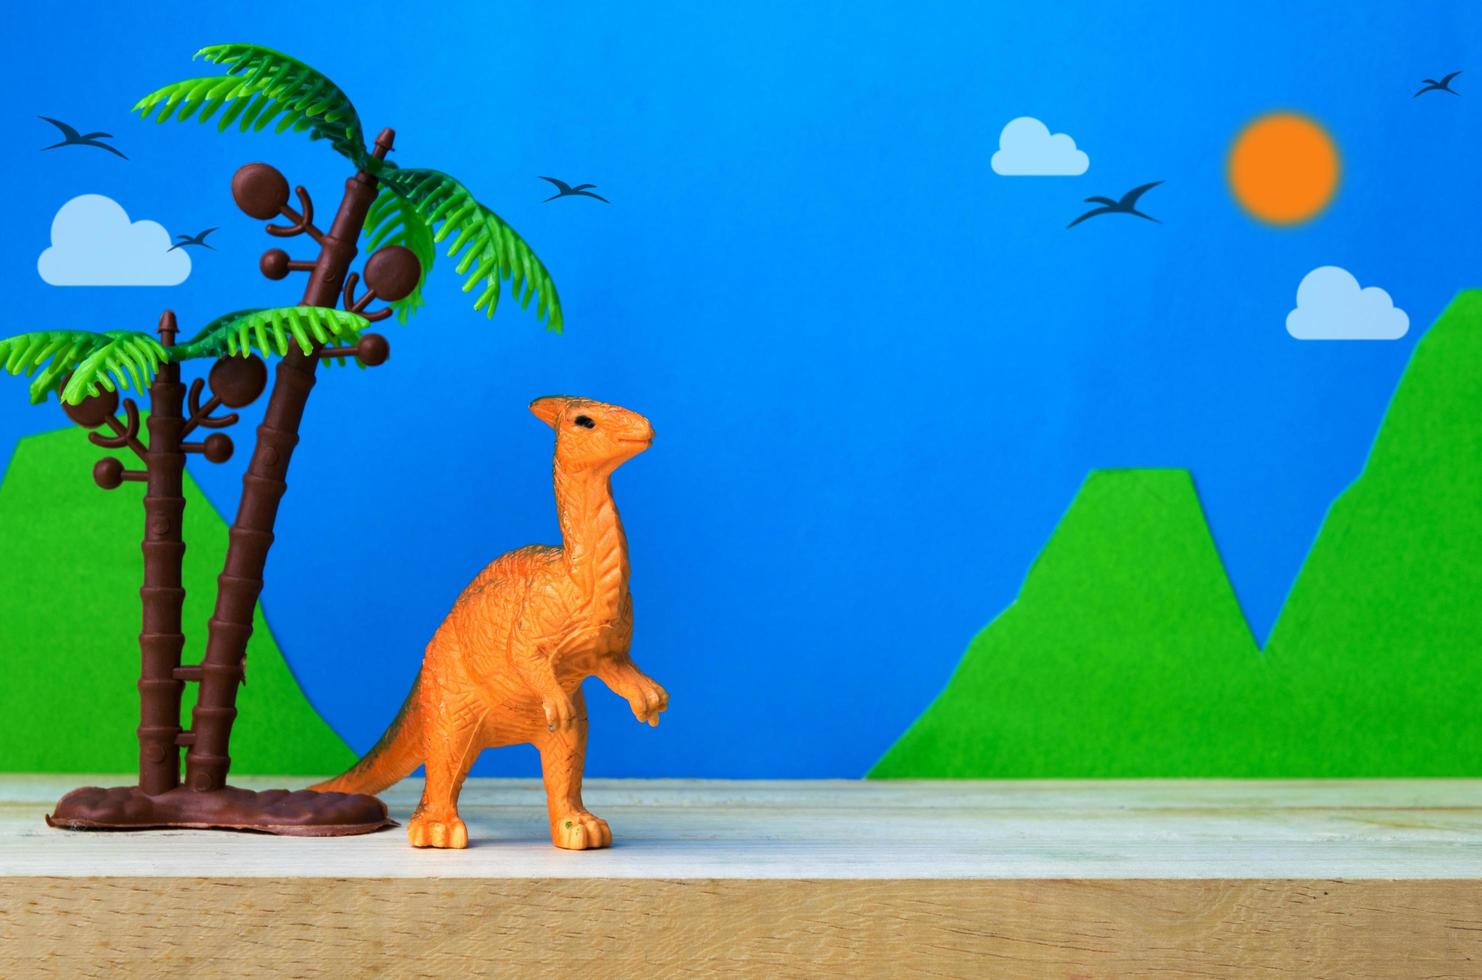 modelo de brinquedo de dinossauro parasaurolophus em fundo de modelos selvagens foto